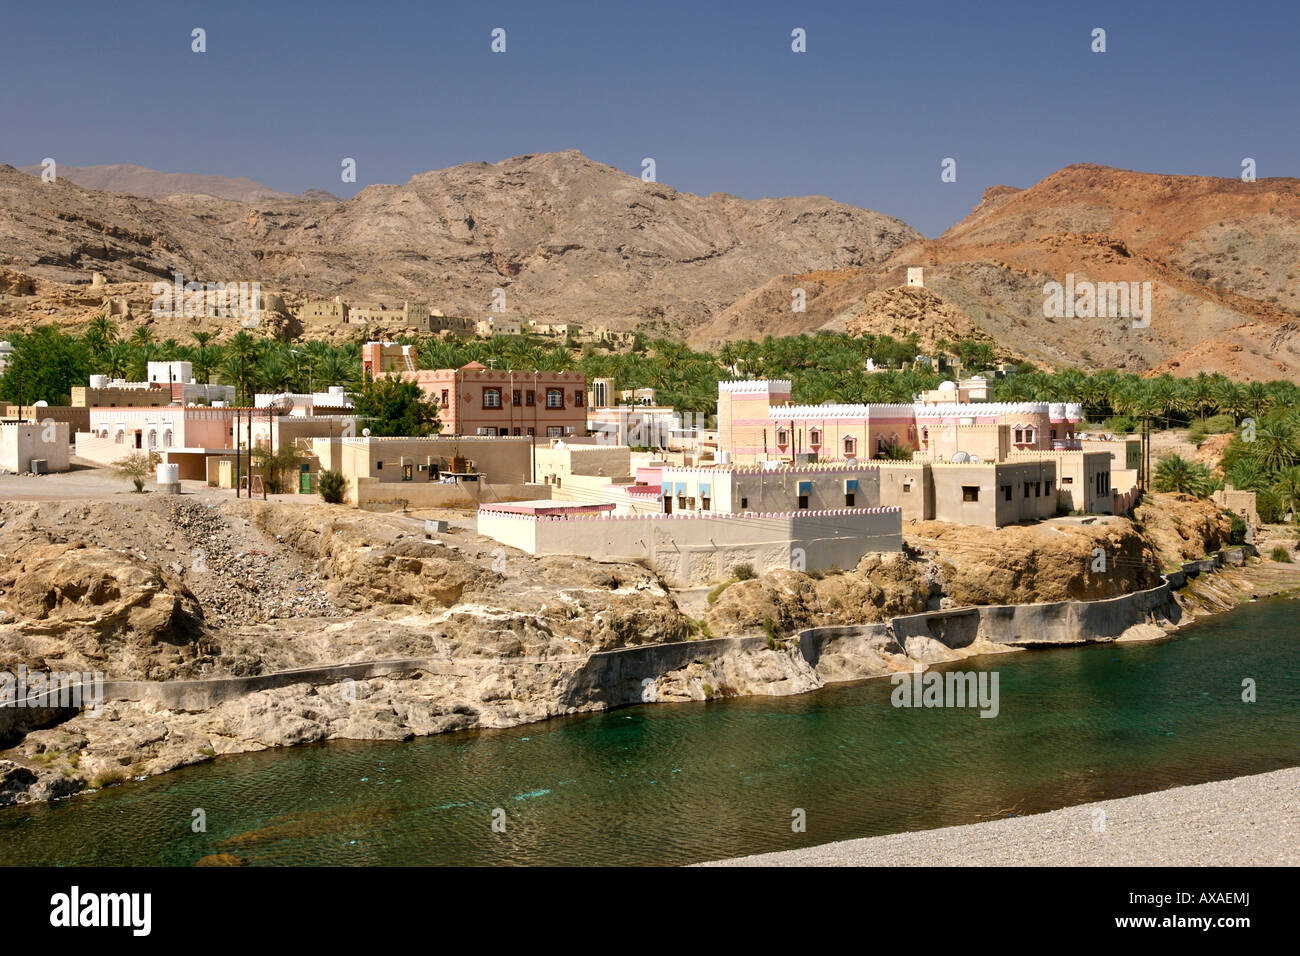 Das Dorf Fanja in Oman. Stockfoto